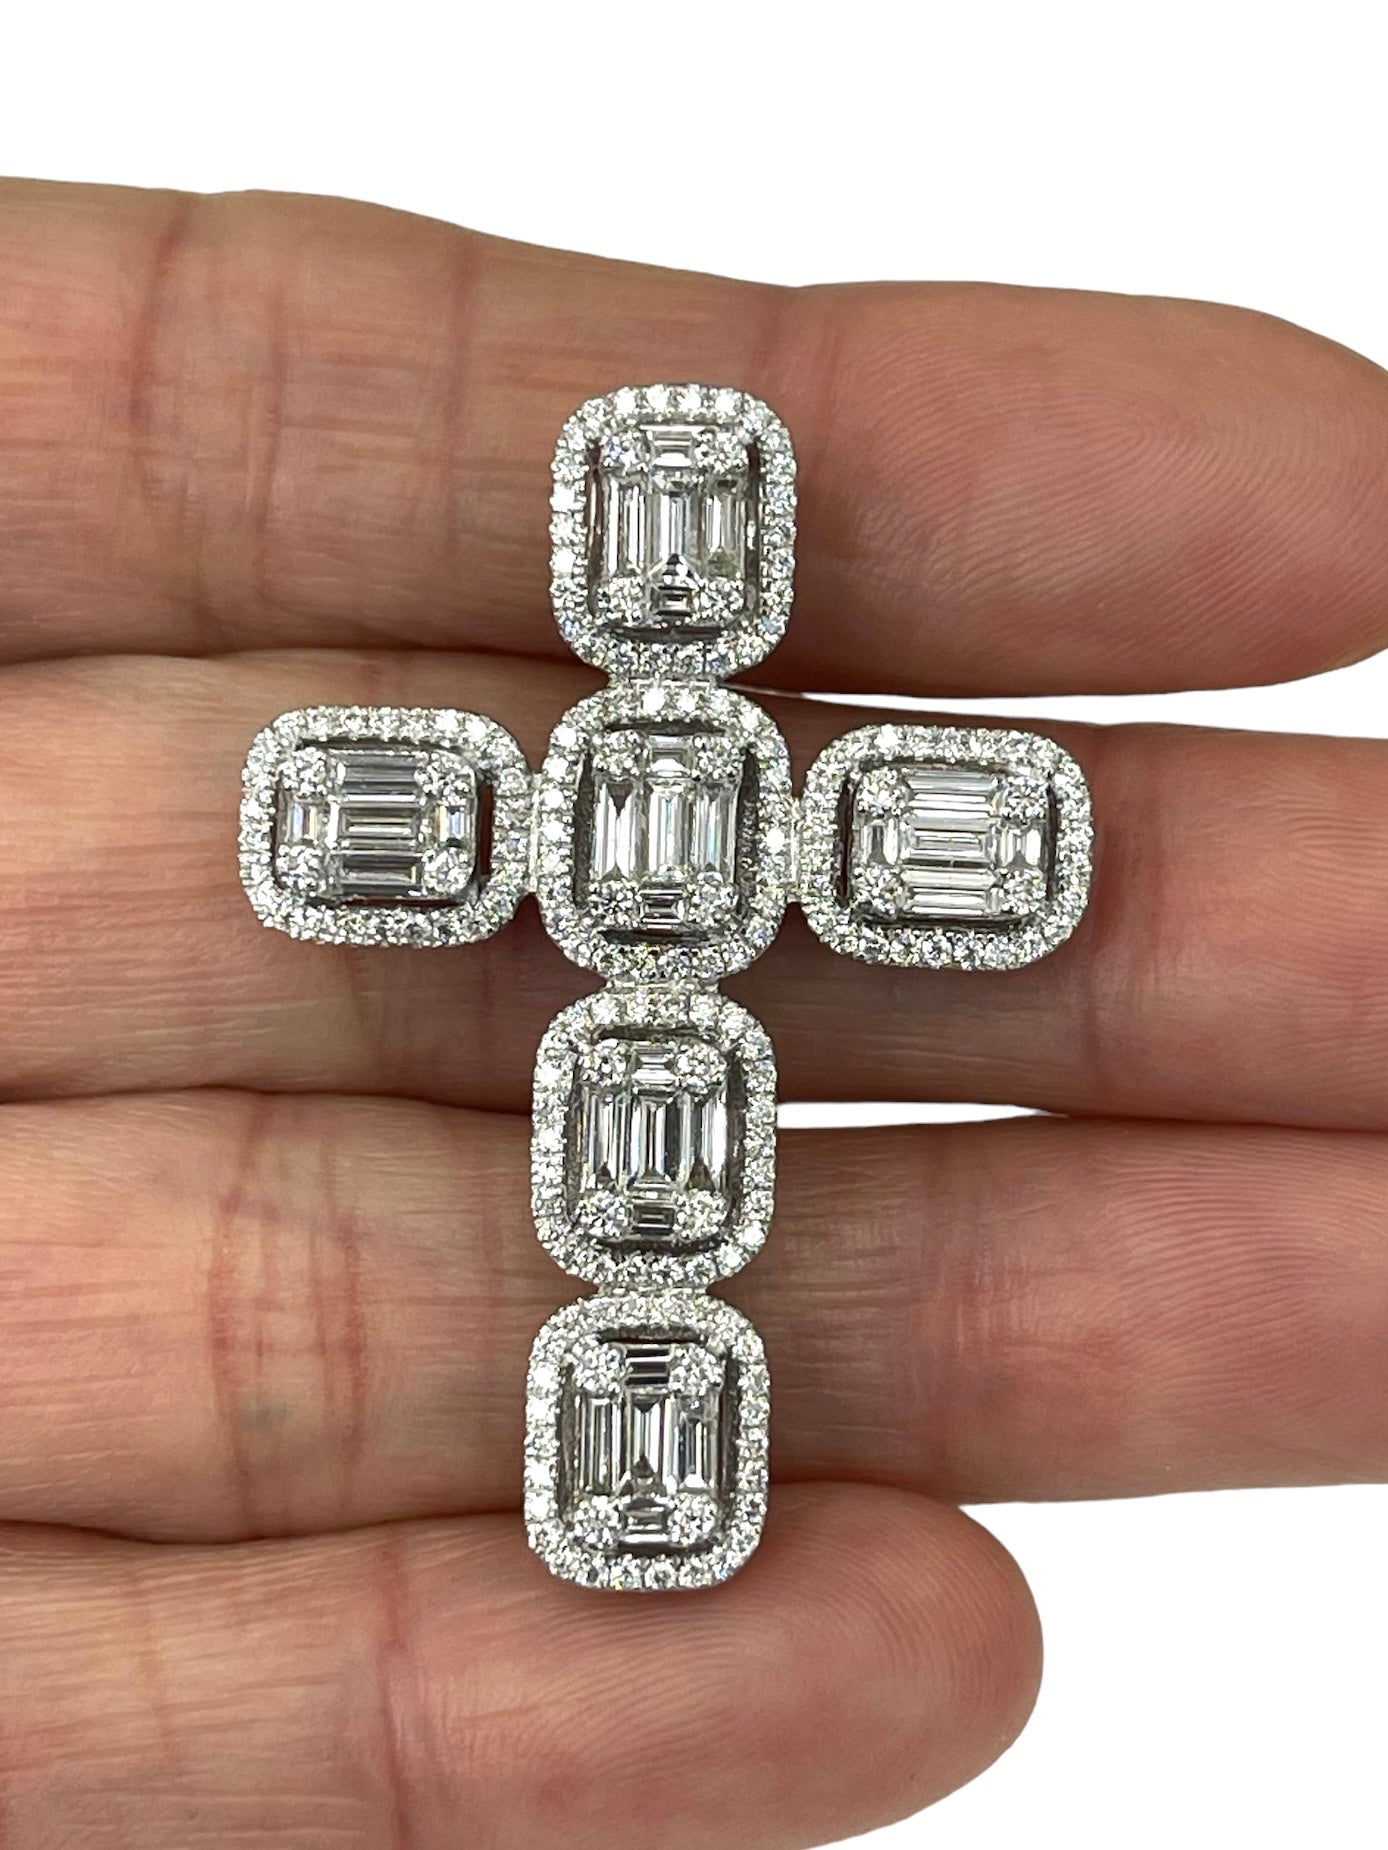 Baguettes Cross Diamond Pendant White Gold 18kt